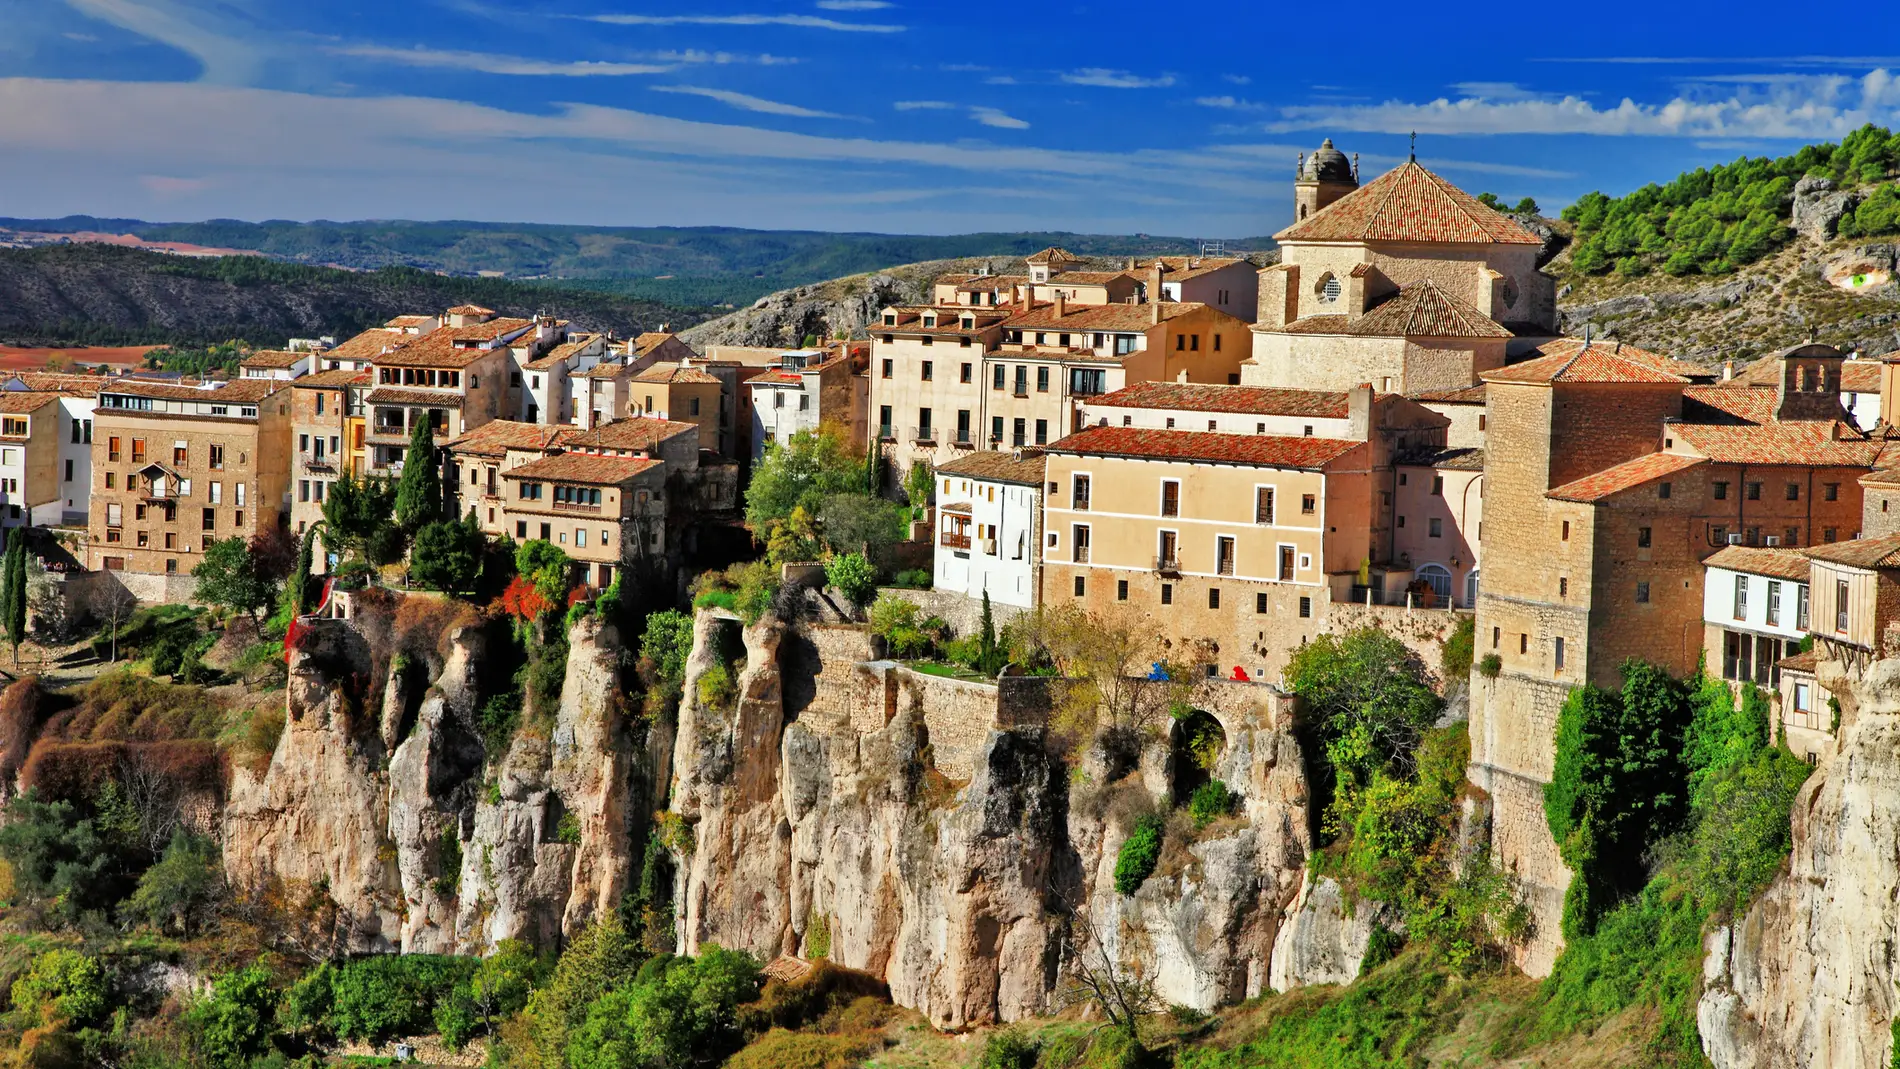 Encantador Informar seré fuerte Cuenca, la ciudad española de los rascacielos medievales